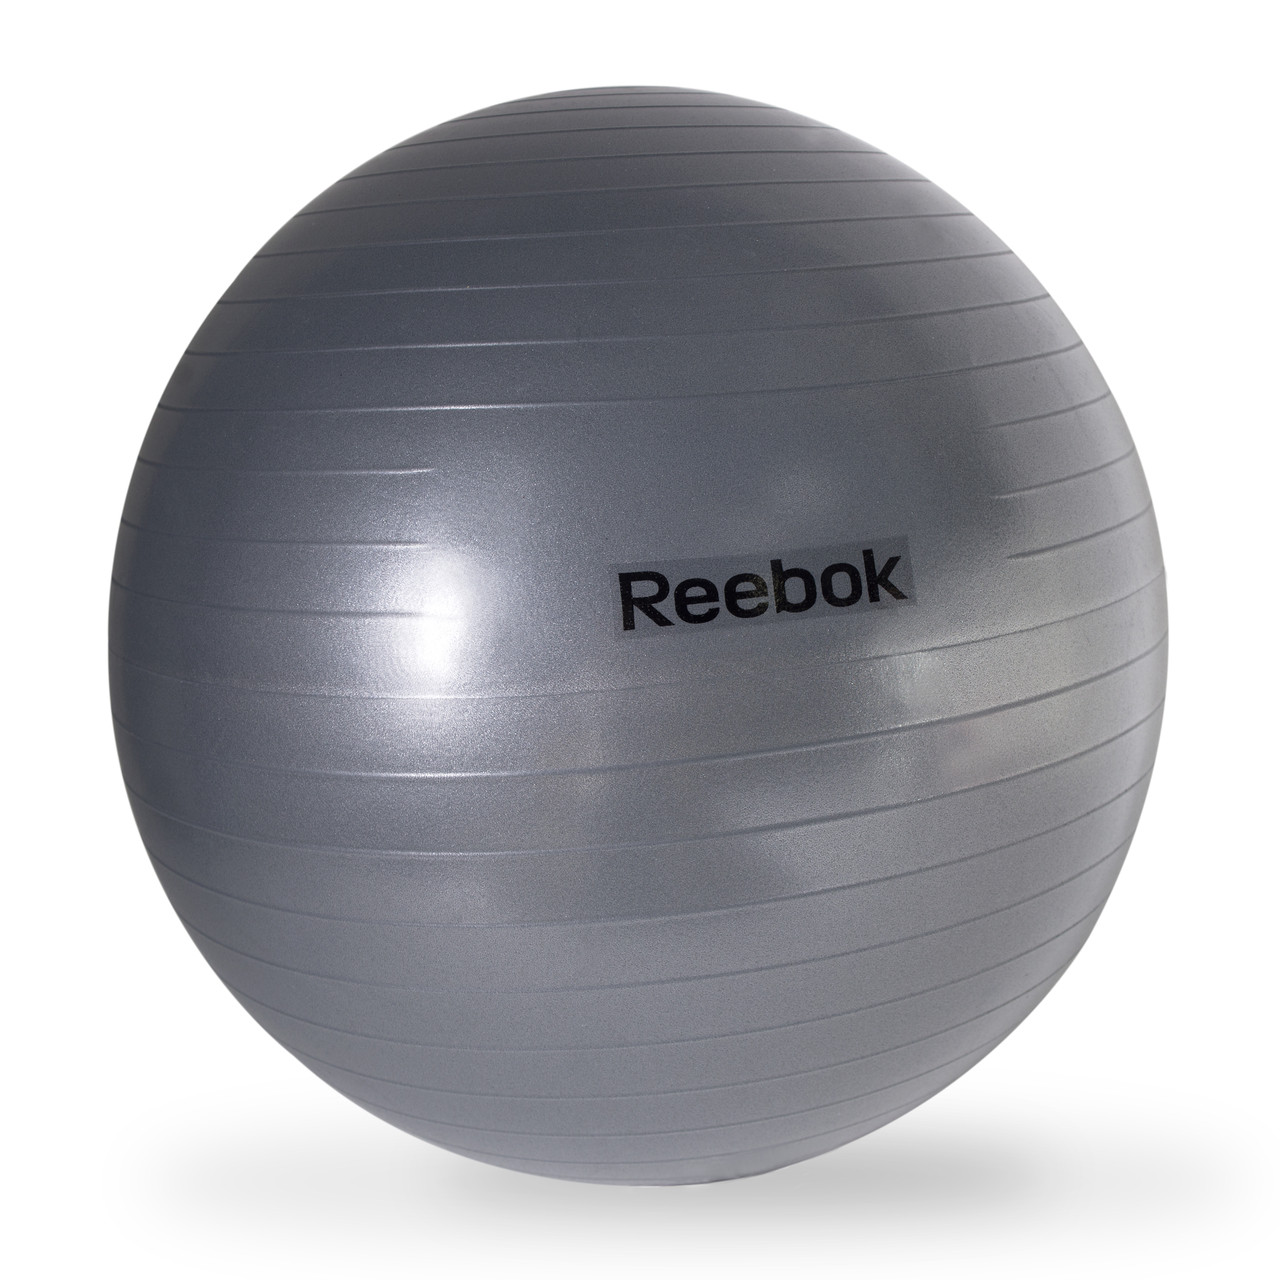 Reebok Gym Ball on Sale, 53% OFF | ilikepinga.com